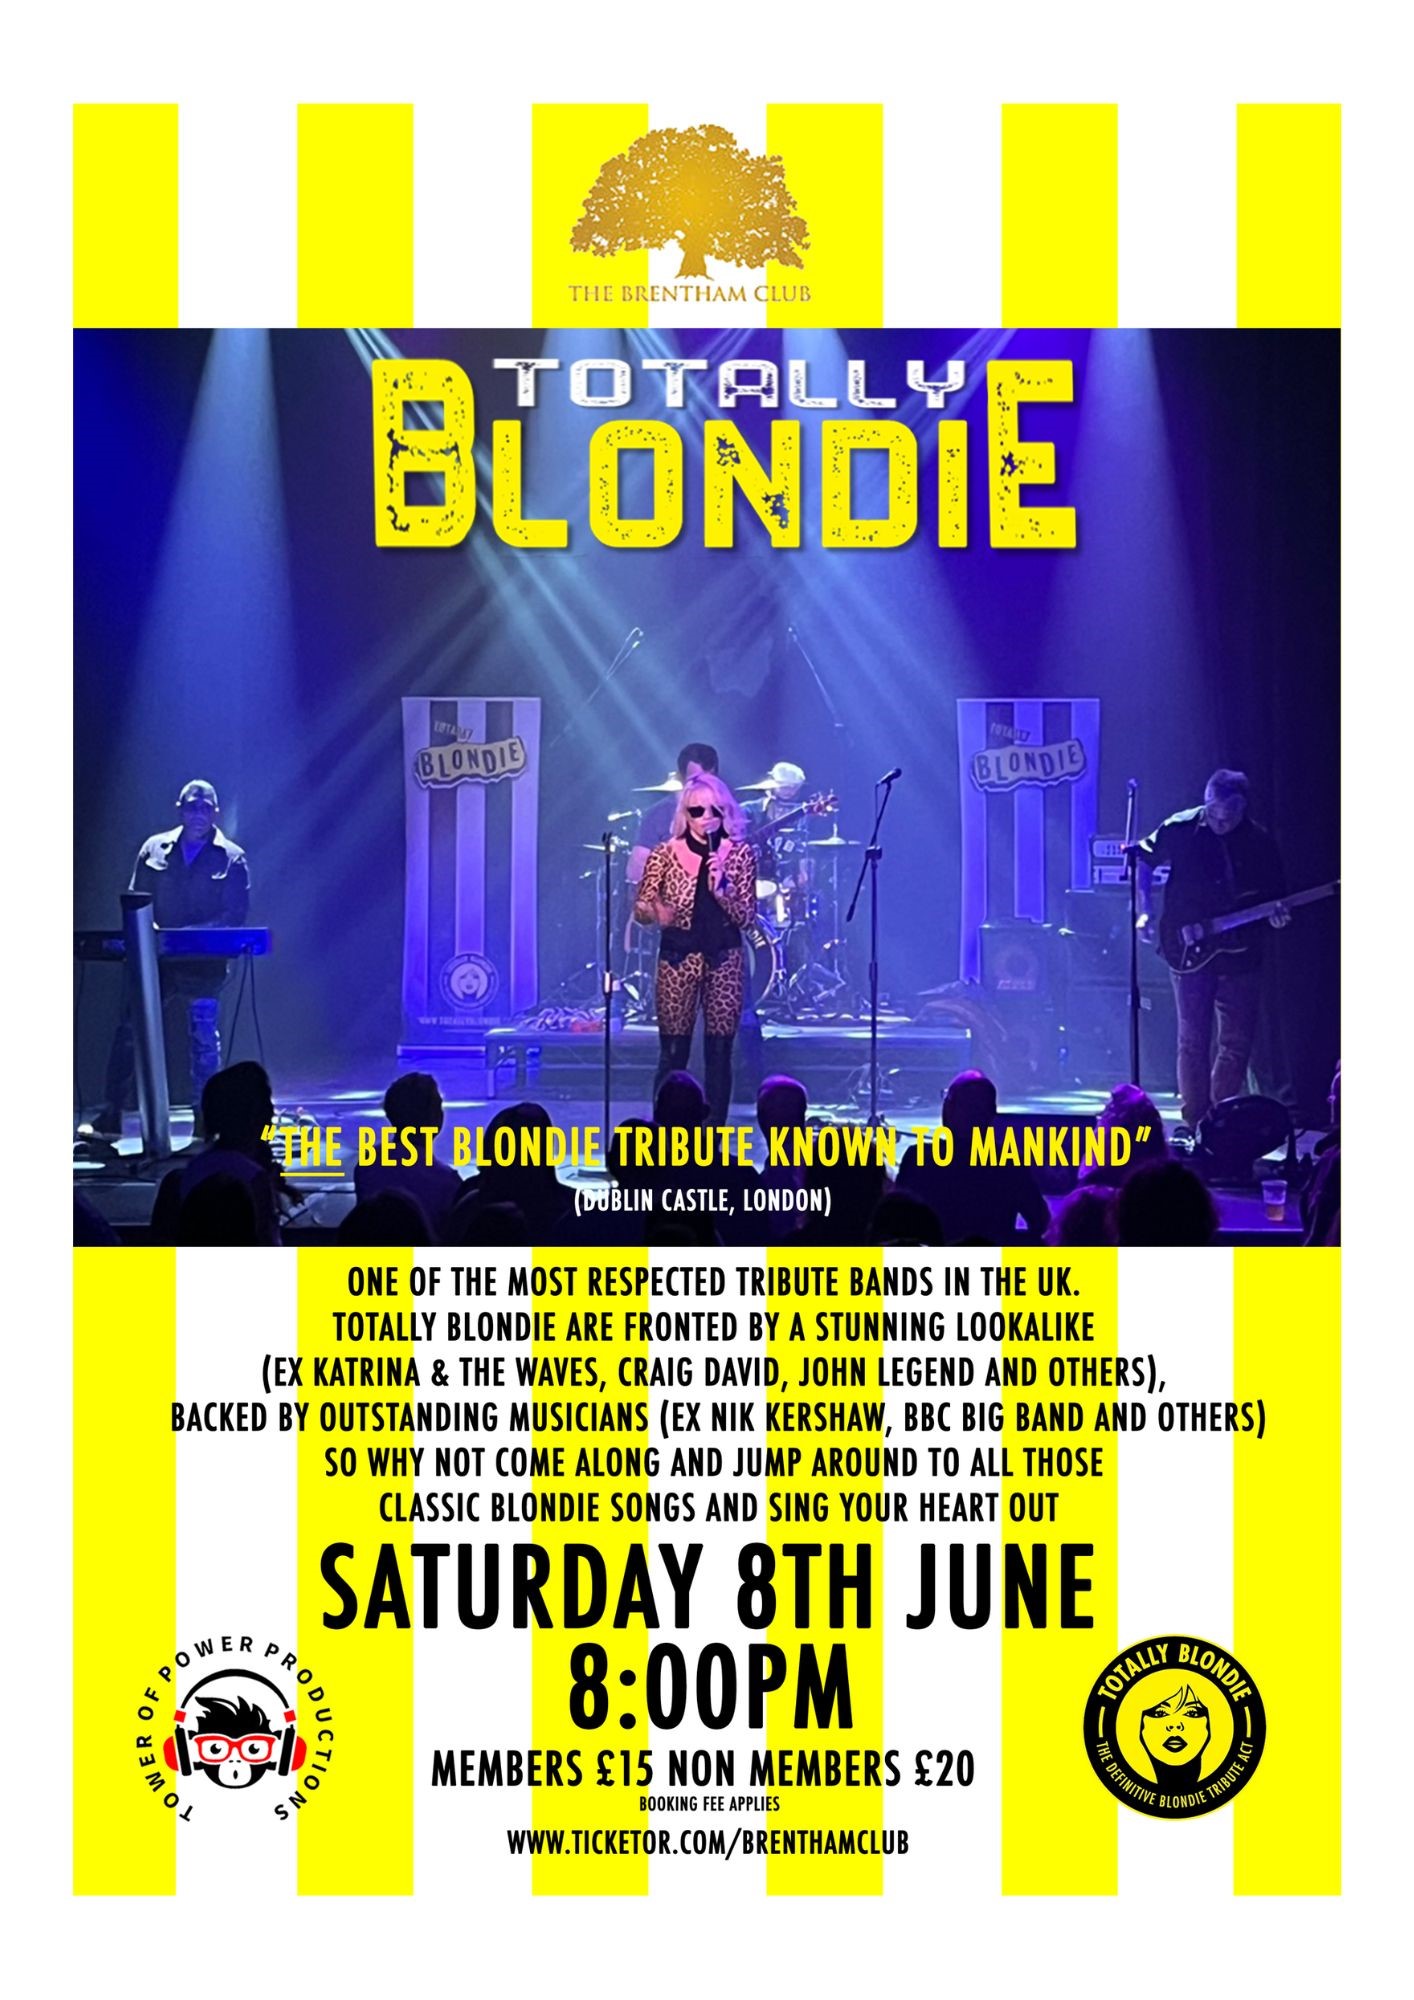 Totally Blondie Blondie Tribute on jun. 08, 20:00@The Brentham Club - Compra entradas y obtén información enBrenthamclub.co.uk 